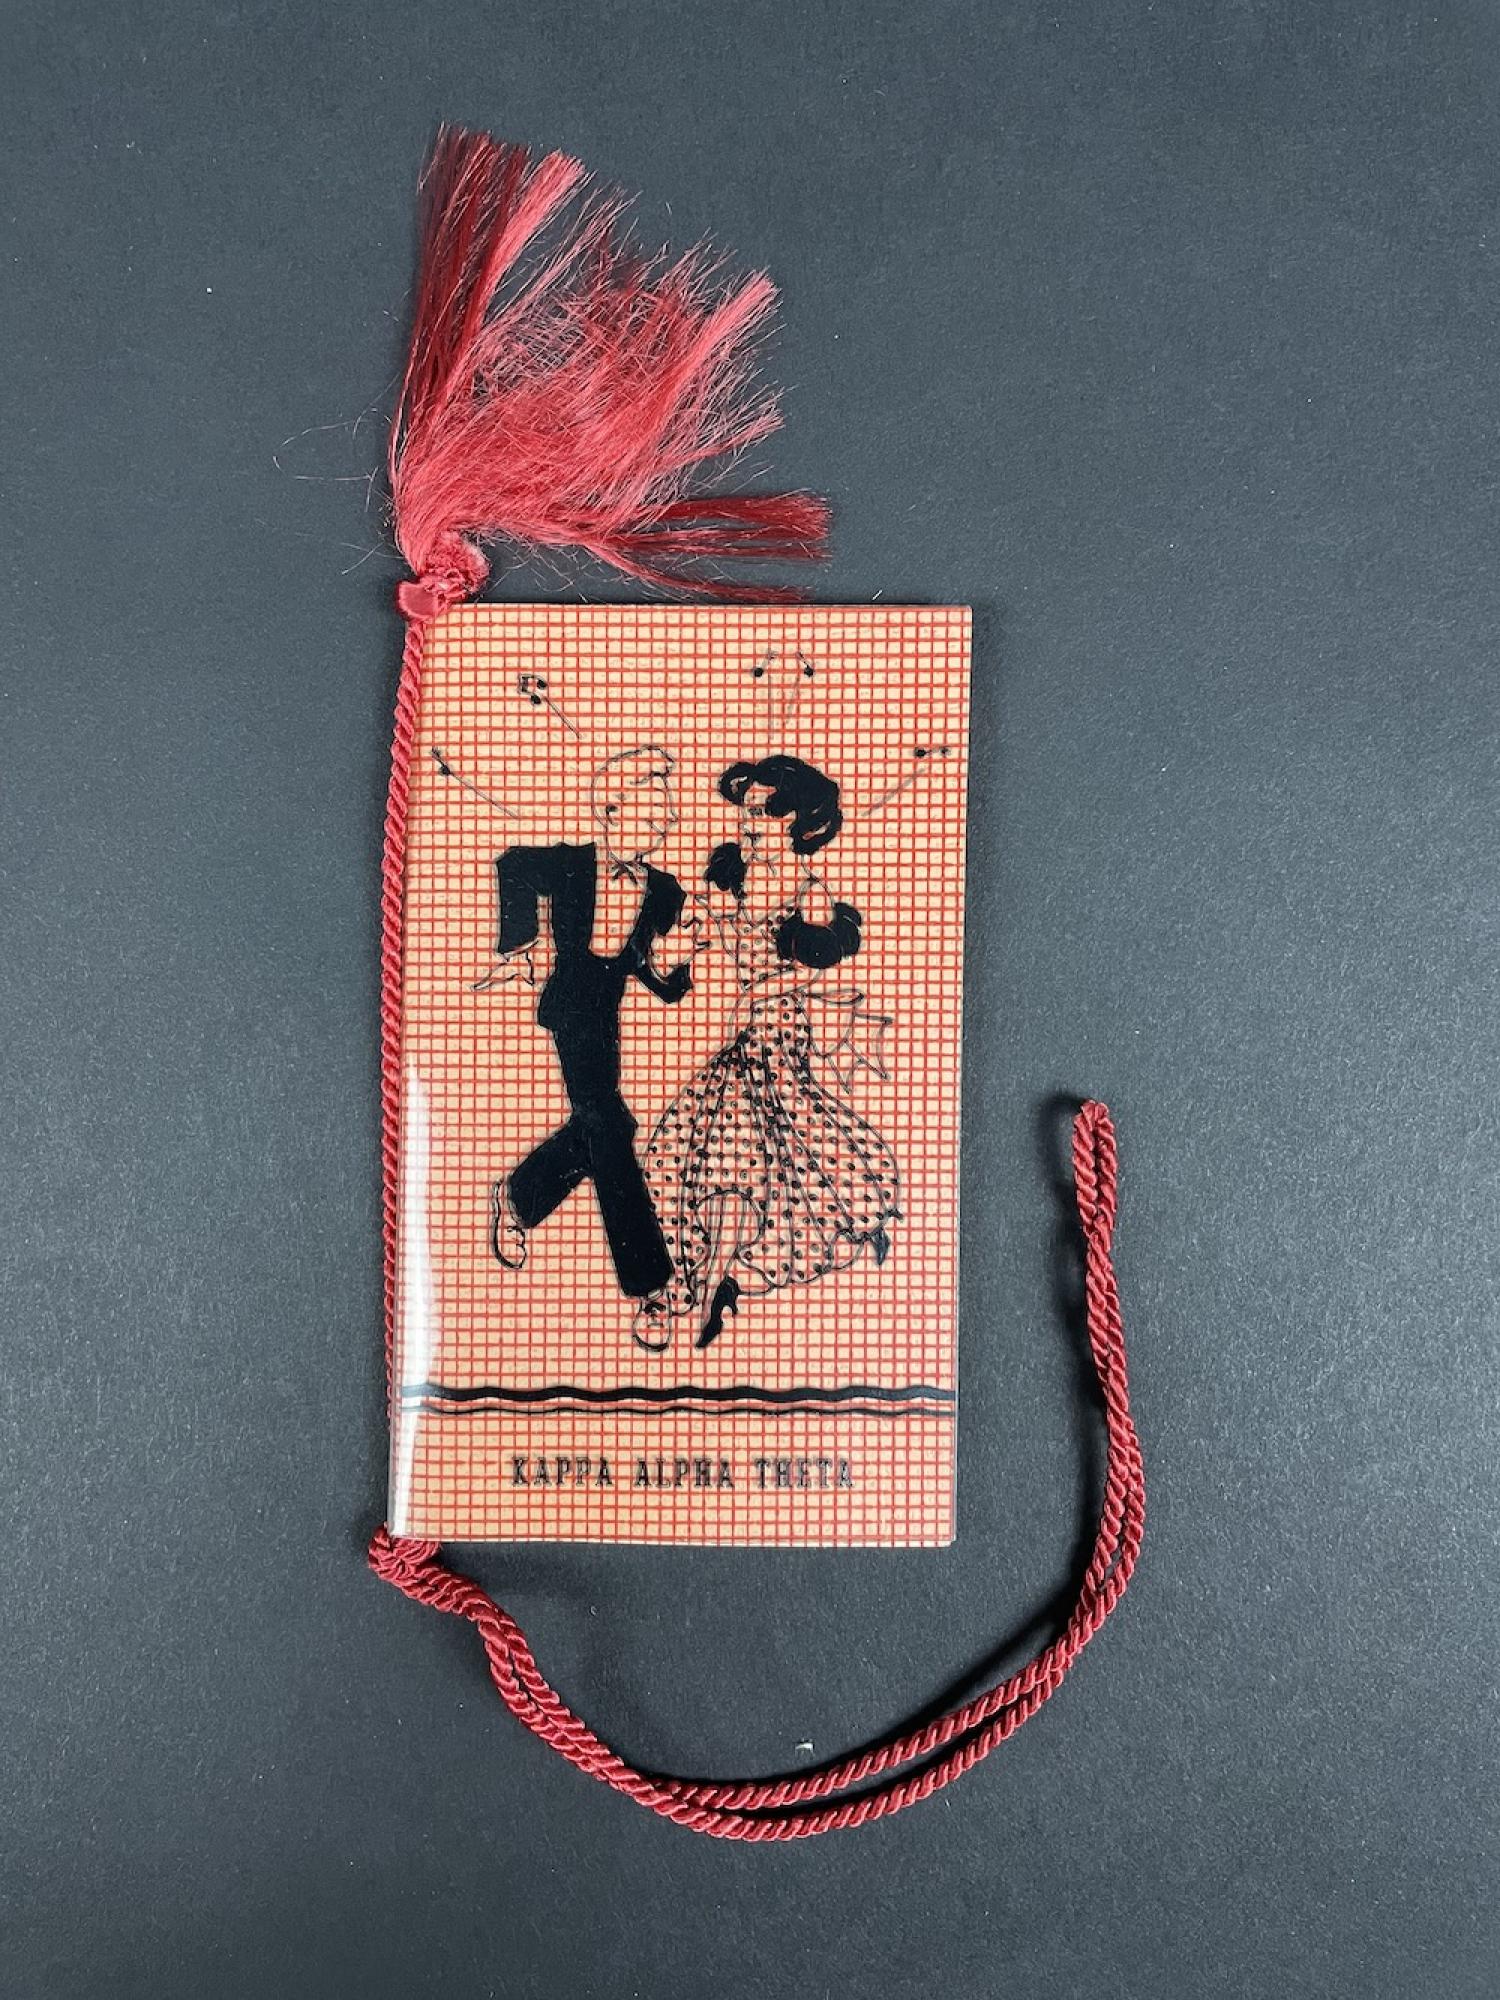 Kappa Alpha Theta dance card